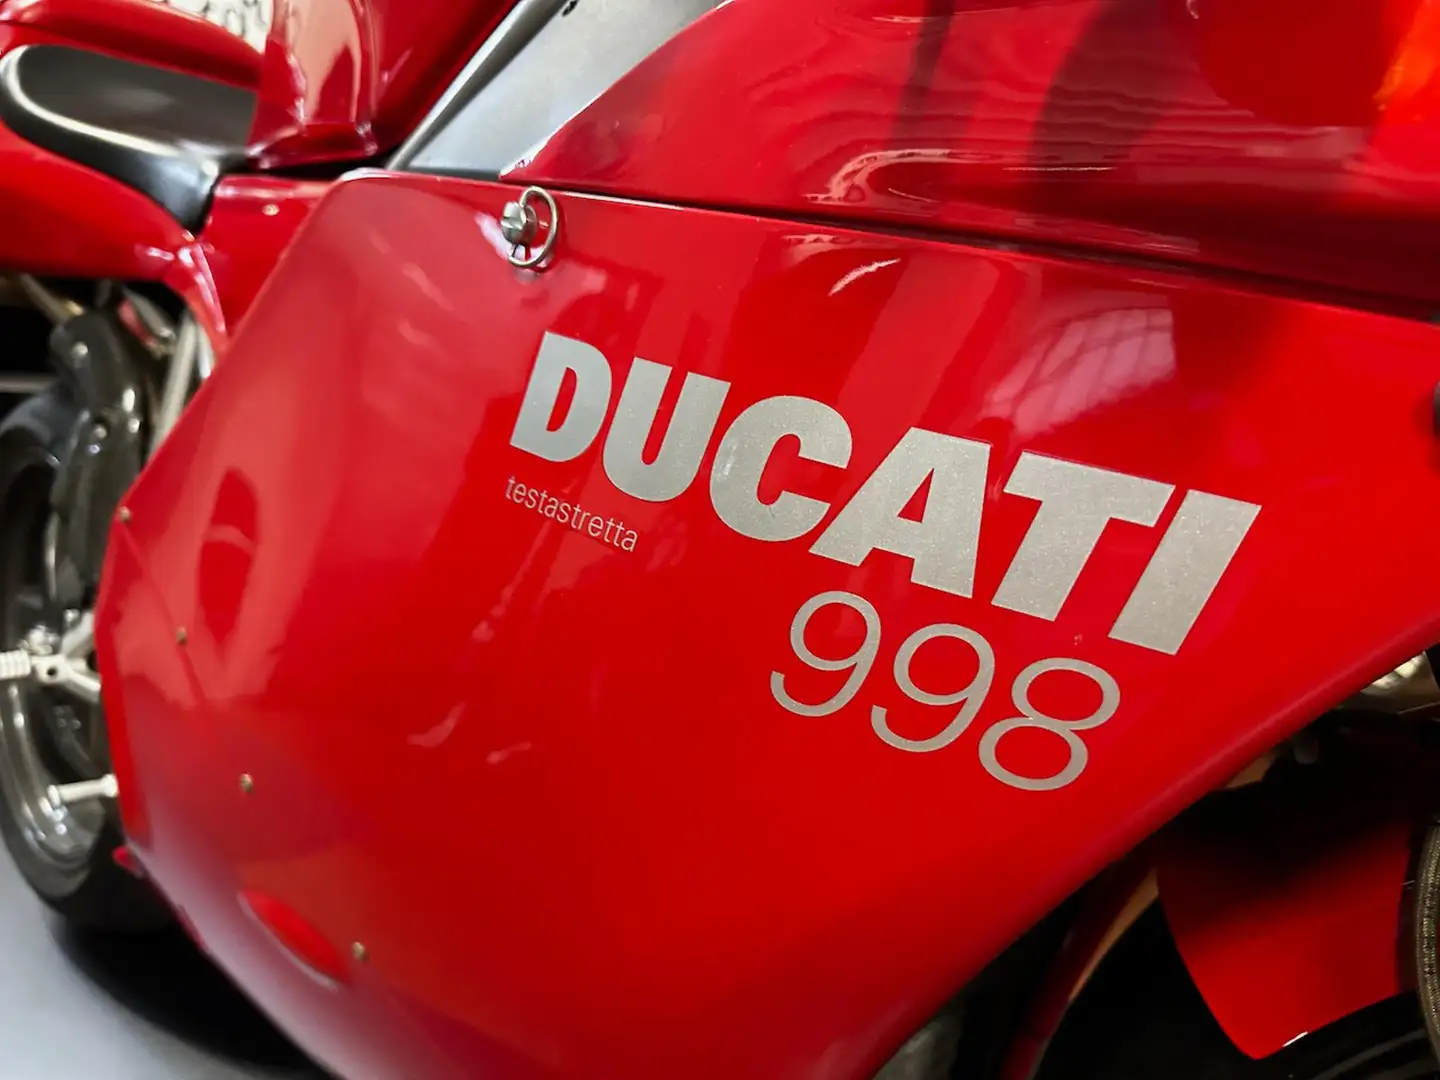 Ducati 998 ORIGINALE Rouge - 2